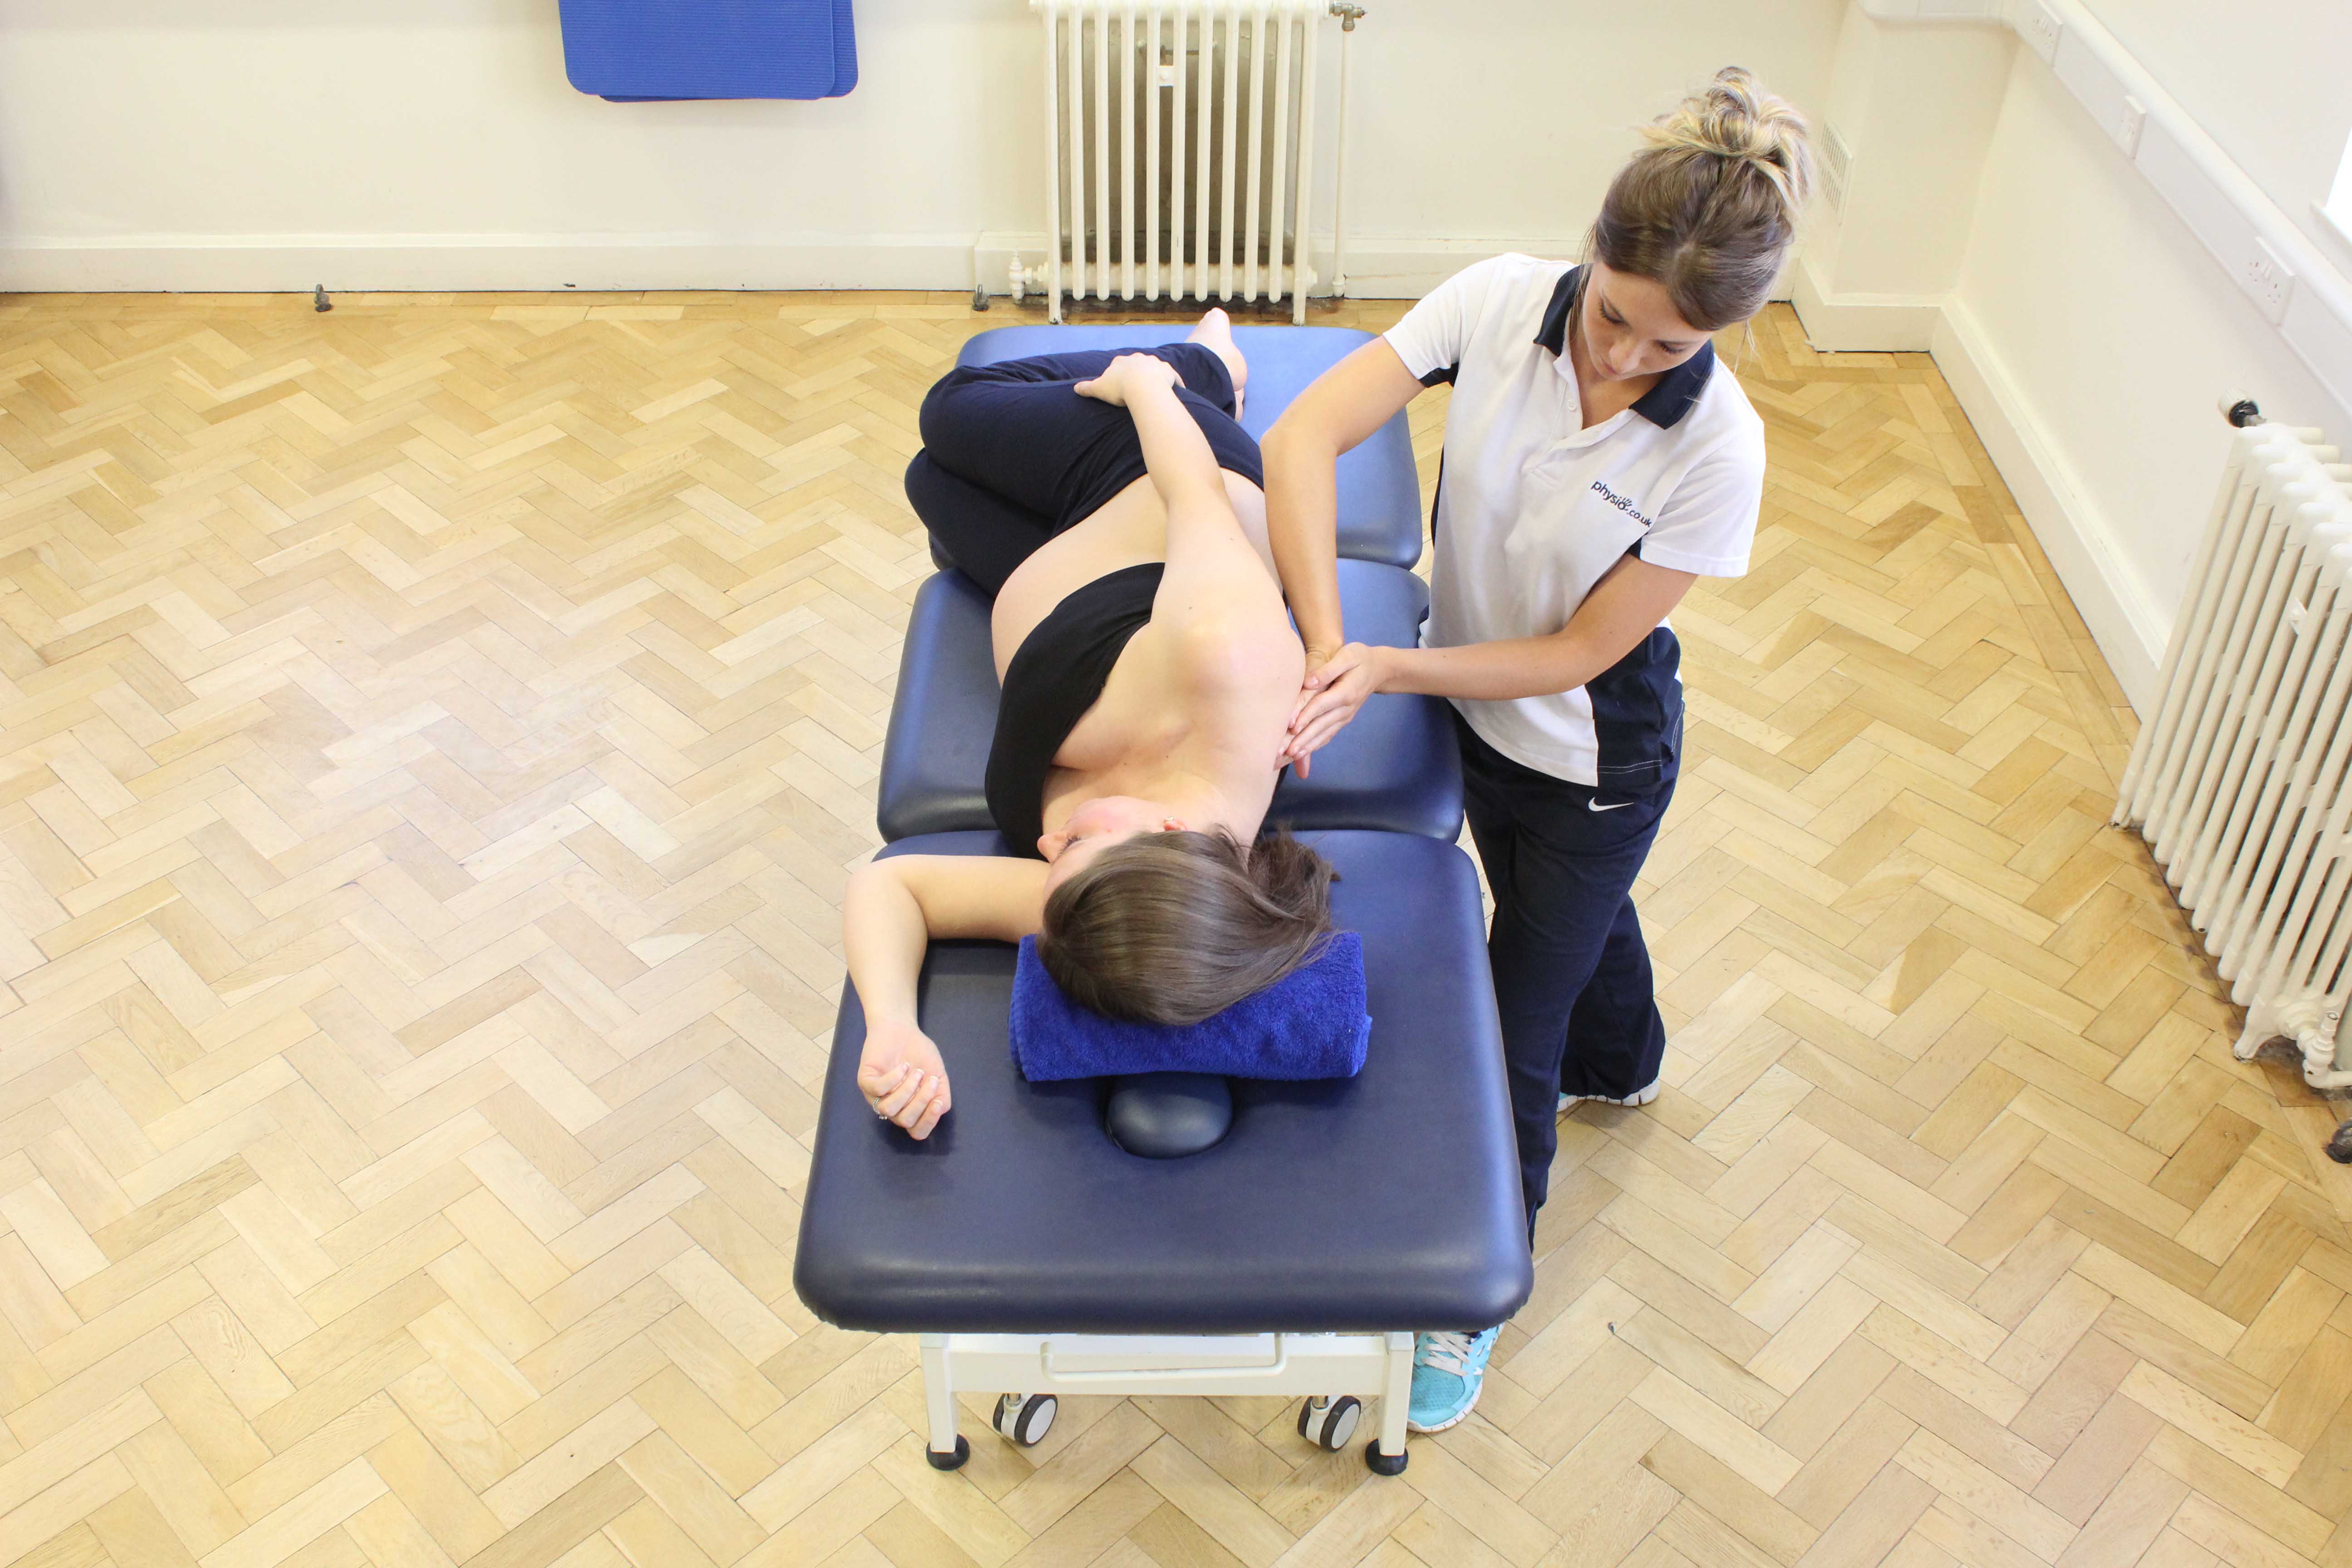 Upper back and shoulder massage during pregnancy